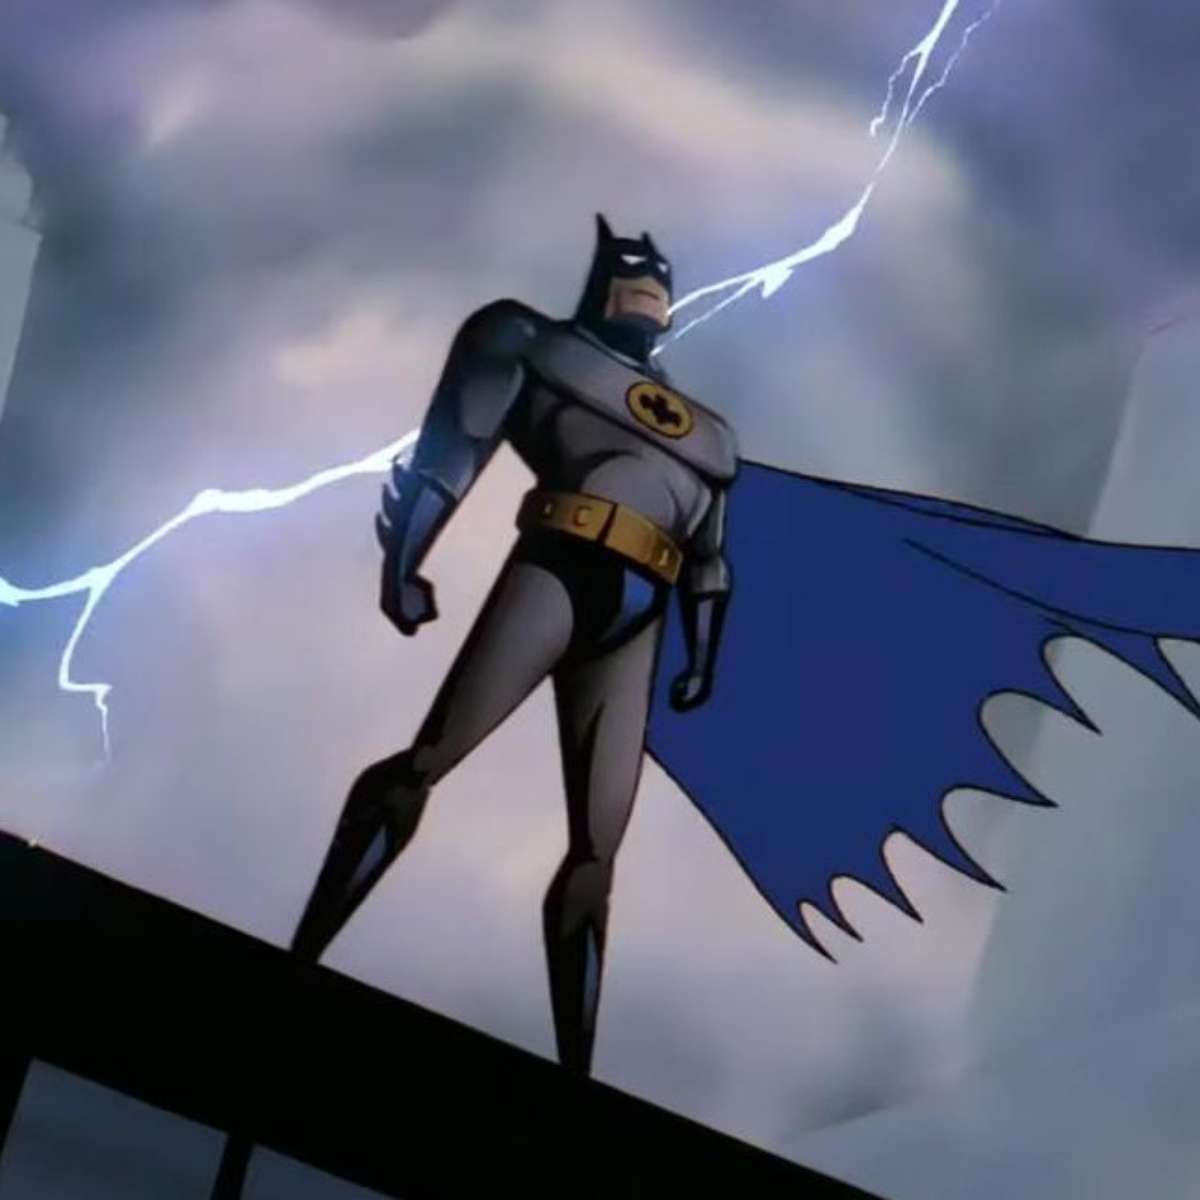 Morre Kevin Conroy, voz do Batman nas animações e games